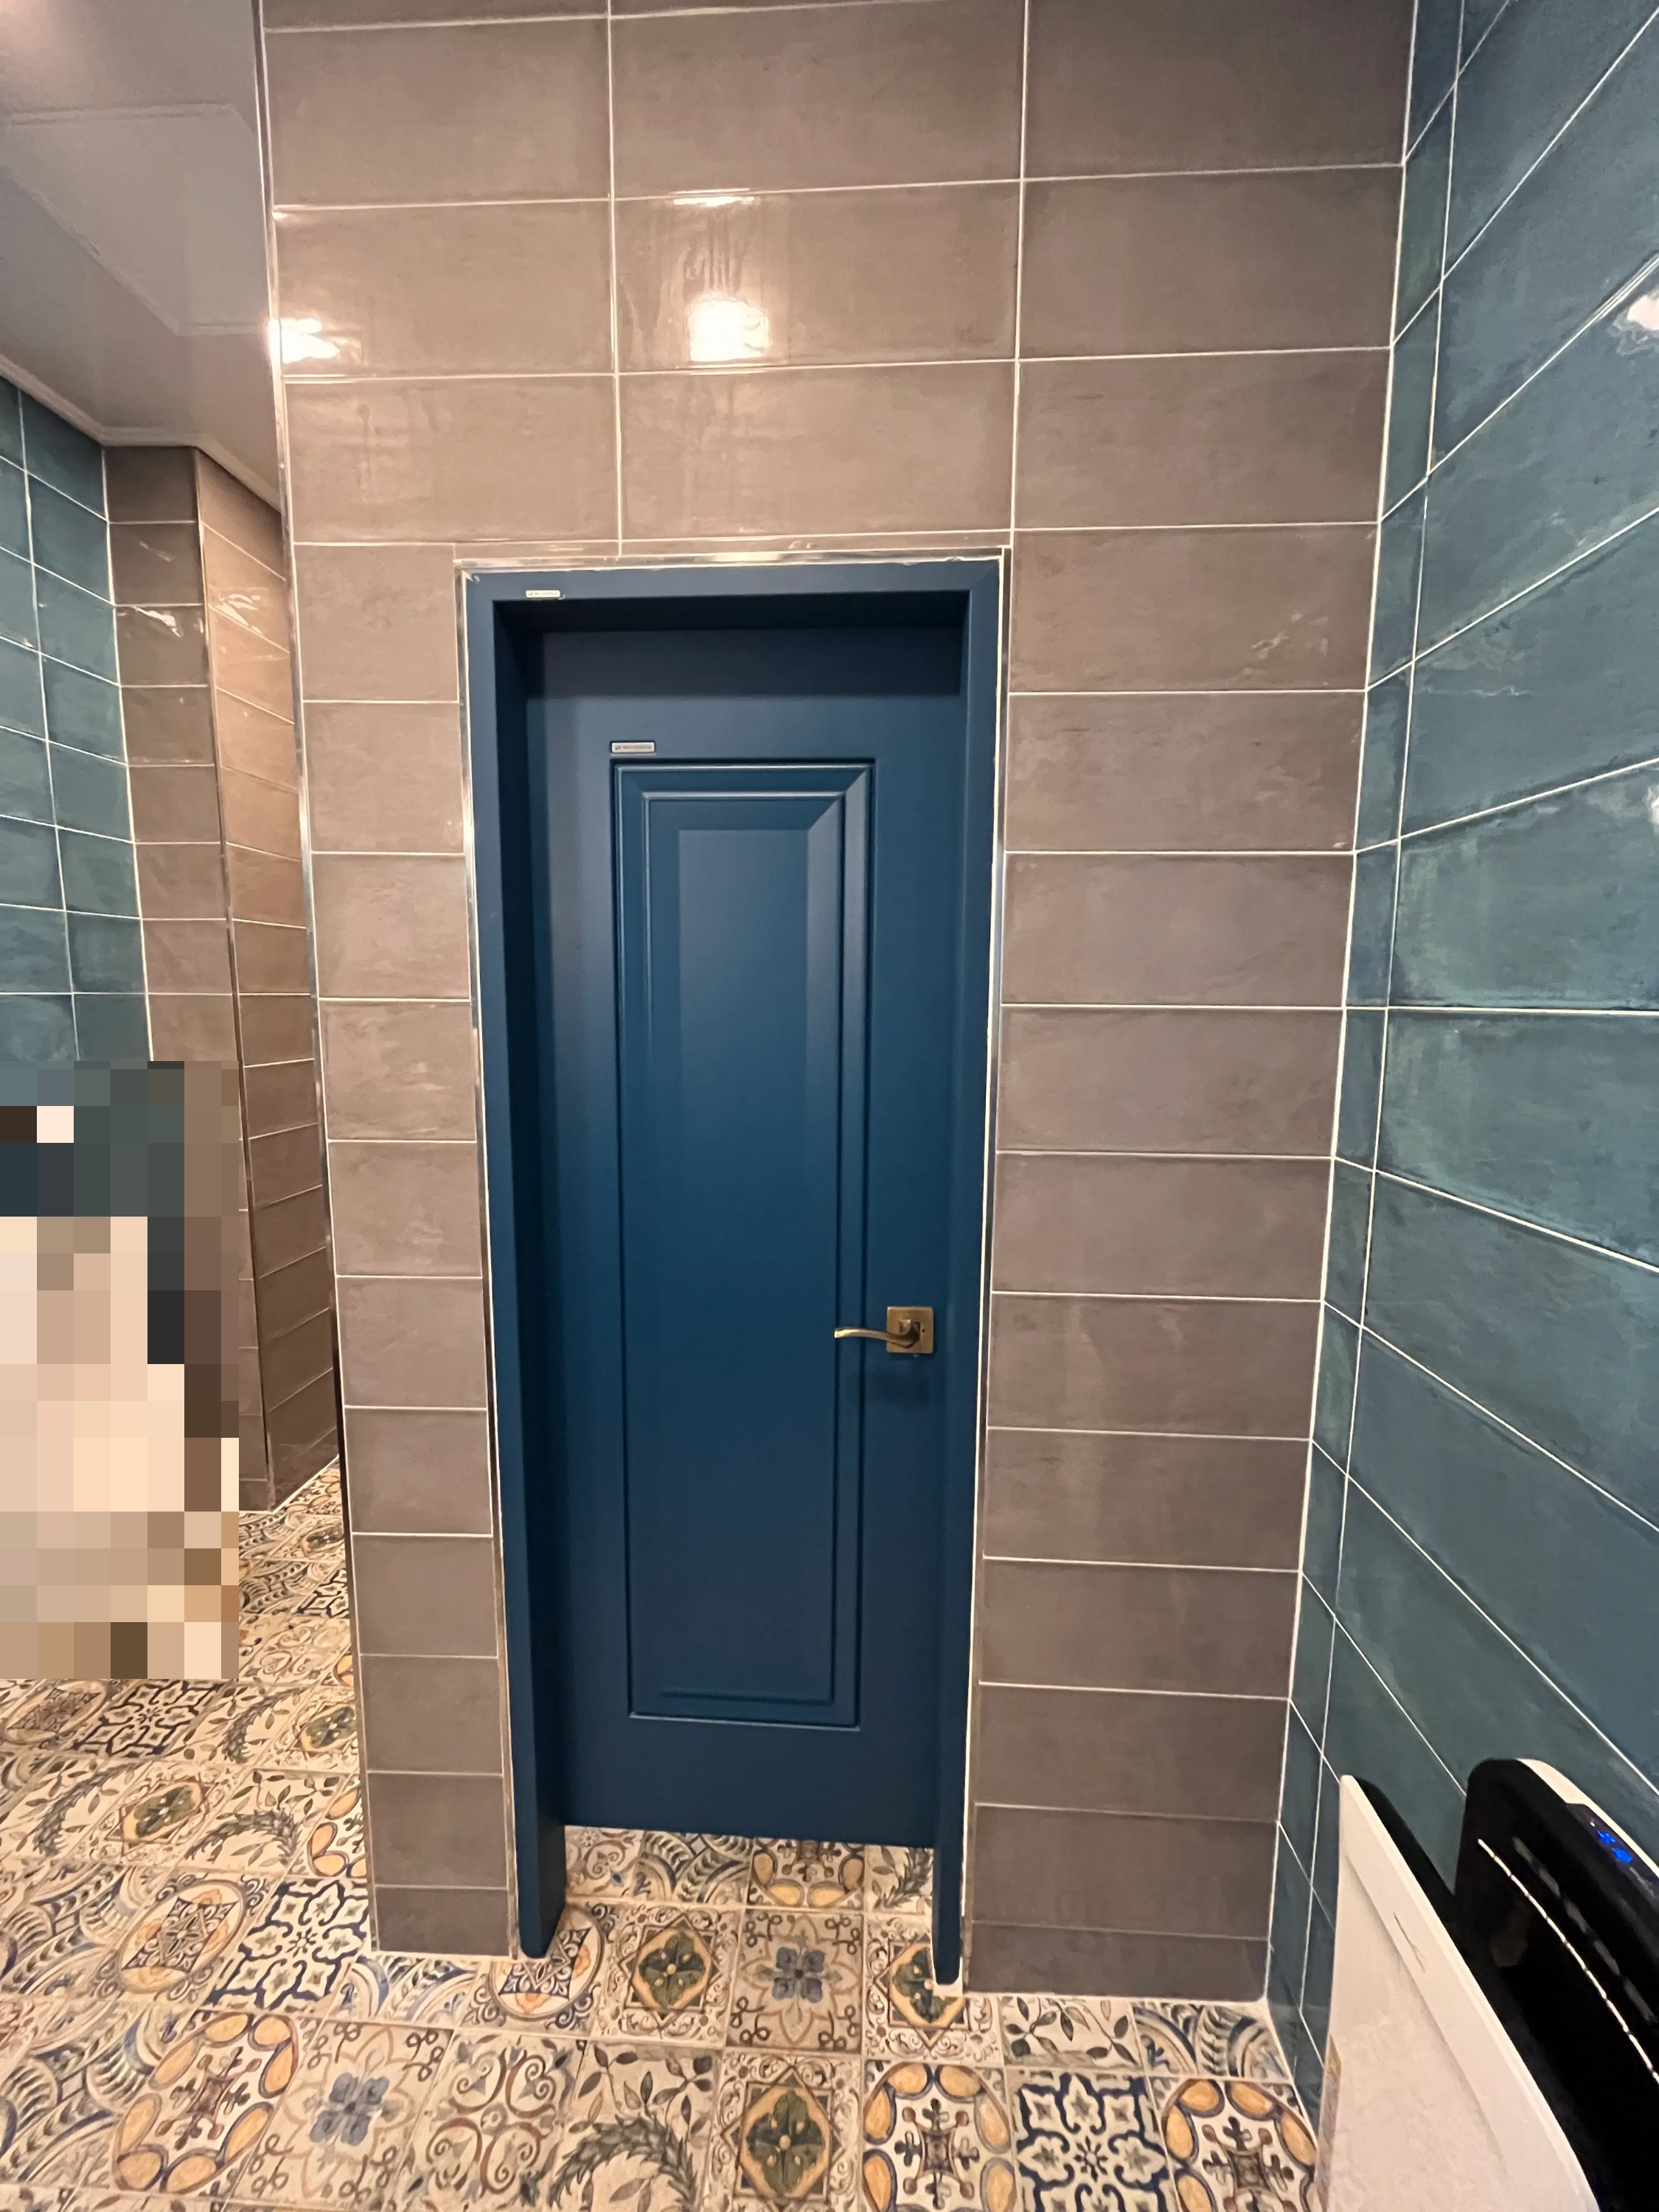 파란색 문과 타일이 이쁜 화장실 내부 사진